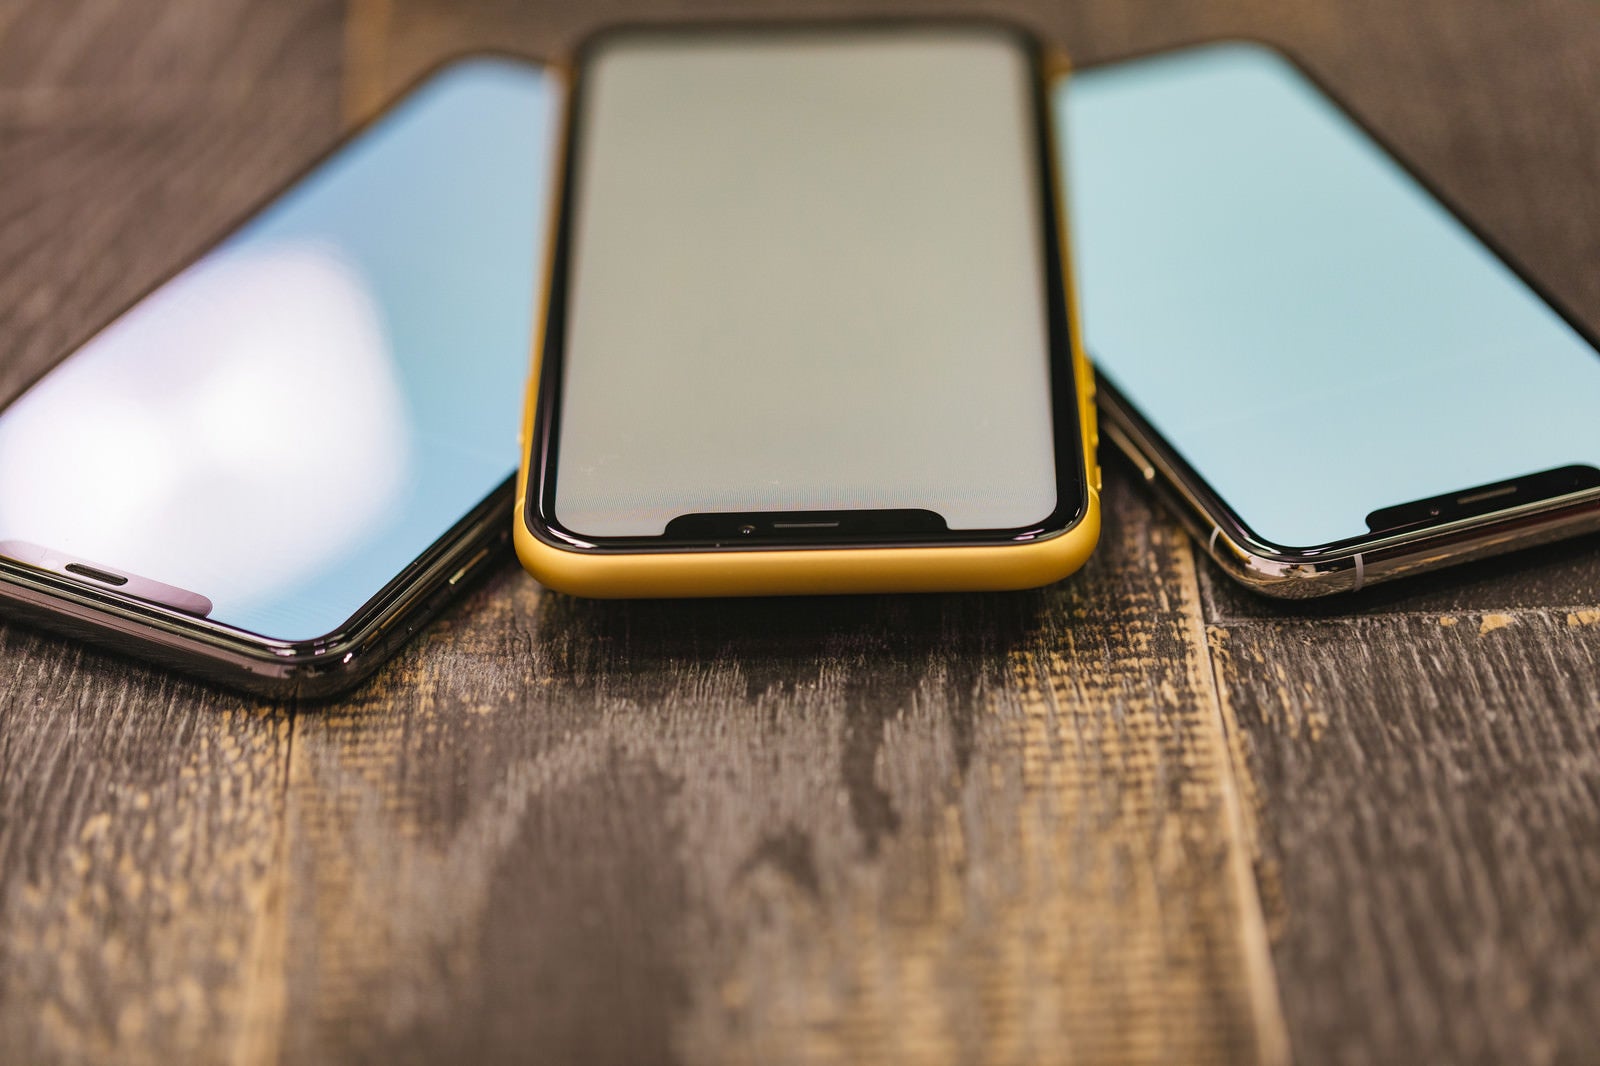 「iPhoneX の有機ELと iPhone XR の液晶ディスプレイを斜めから見る」の写真